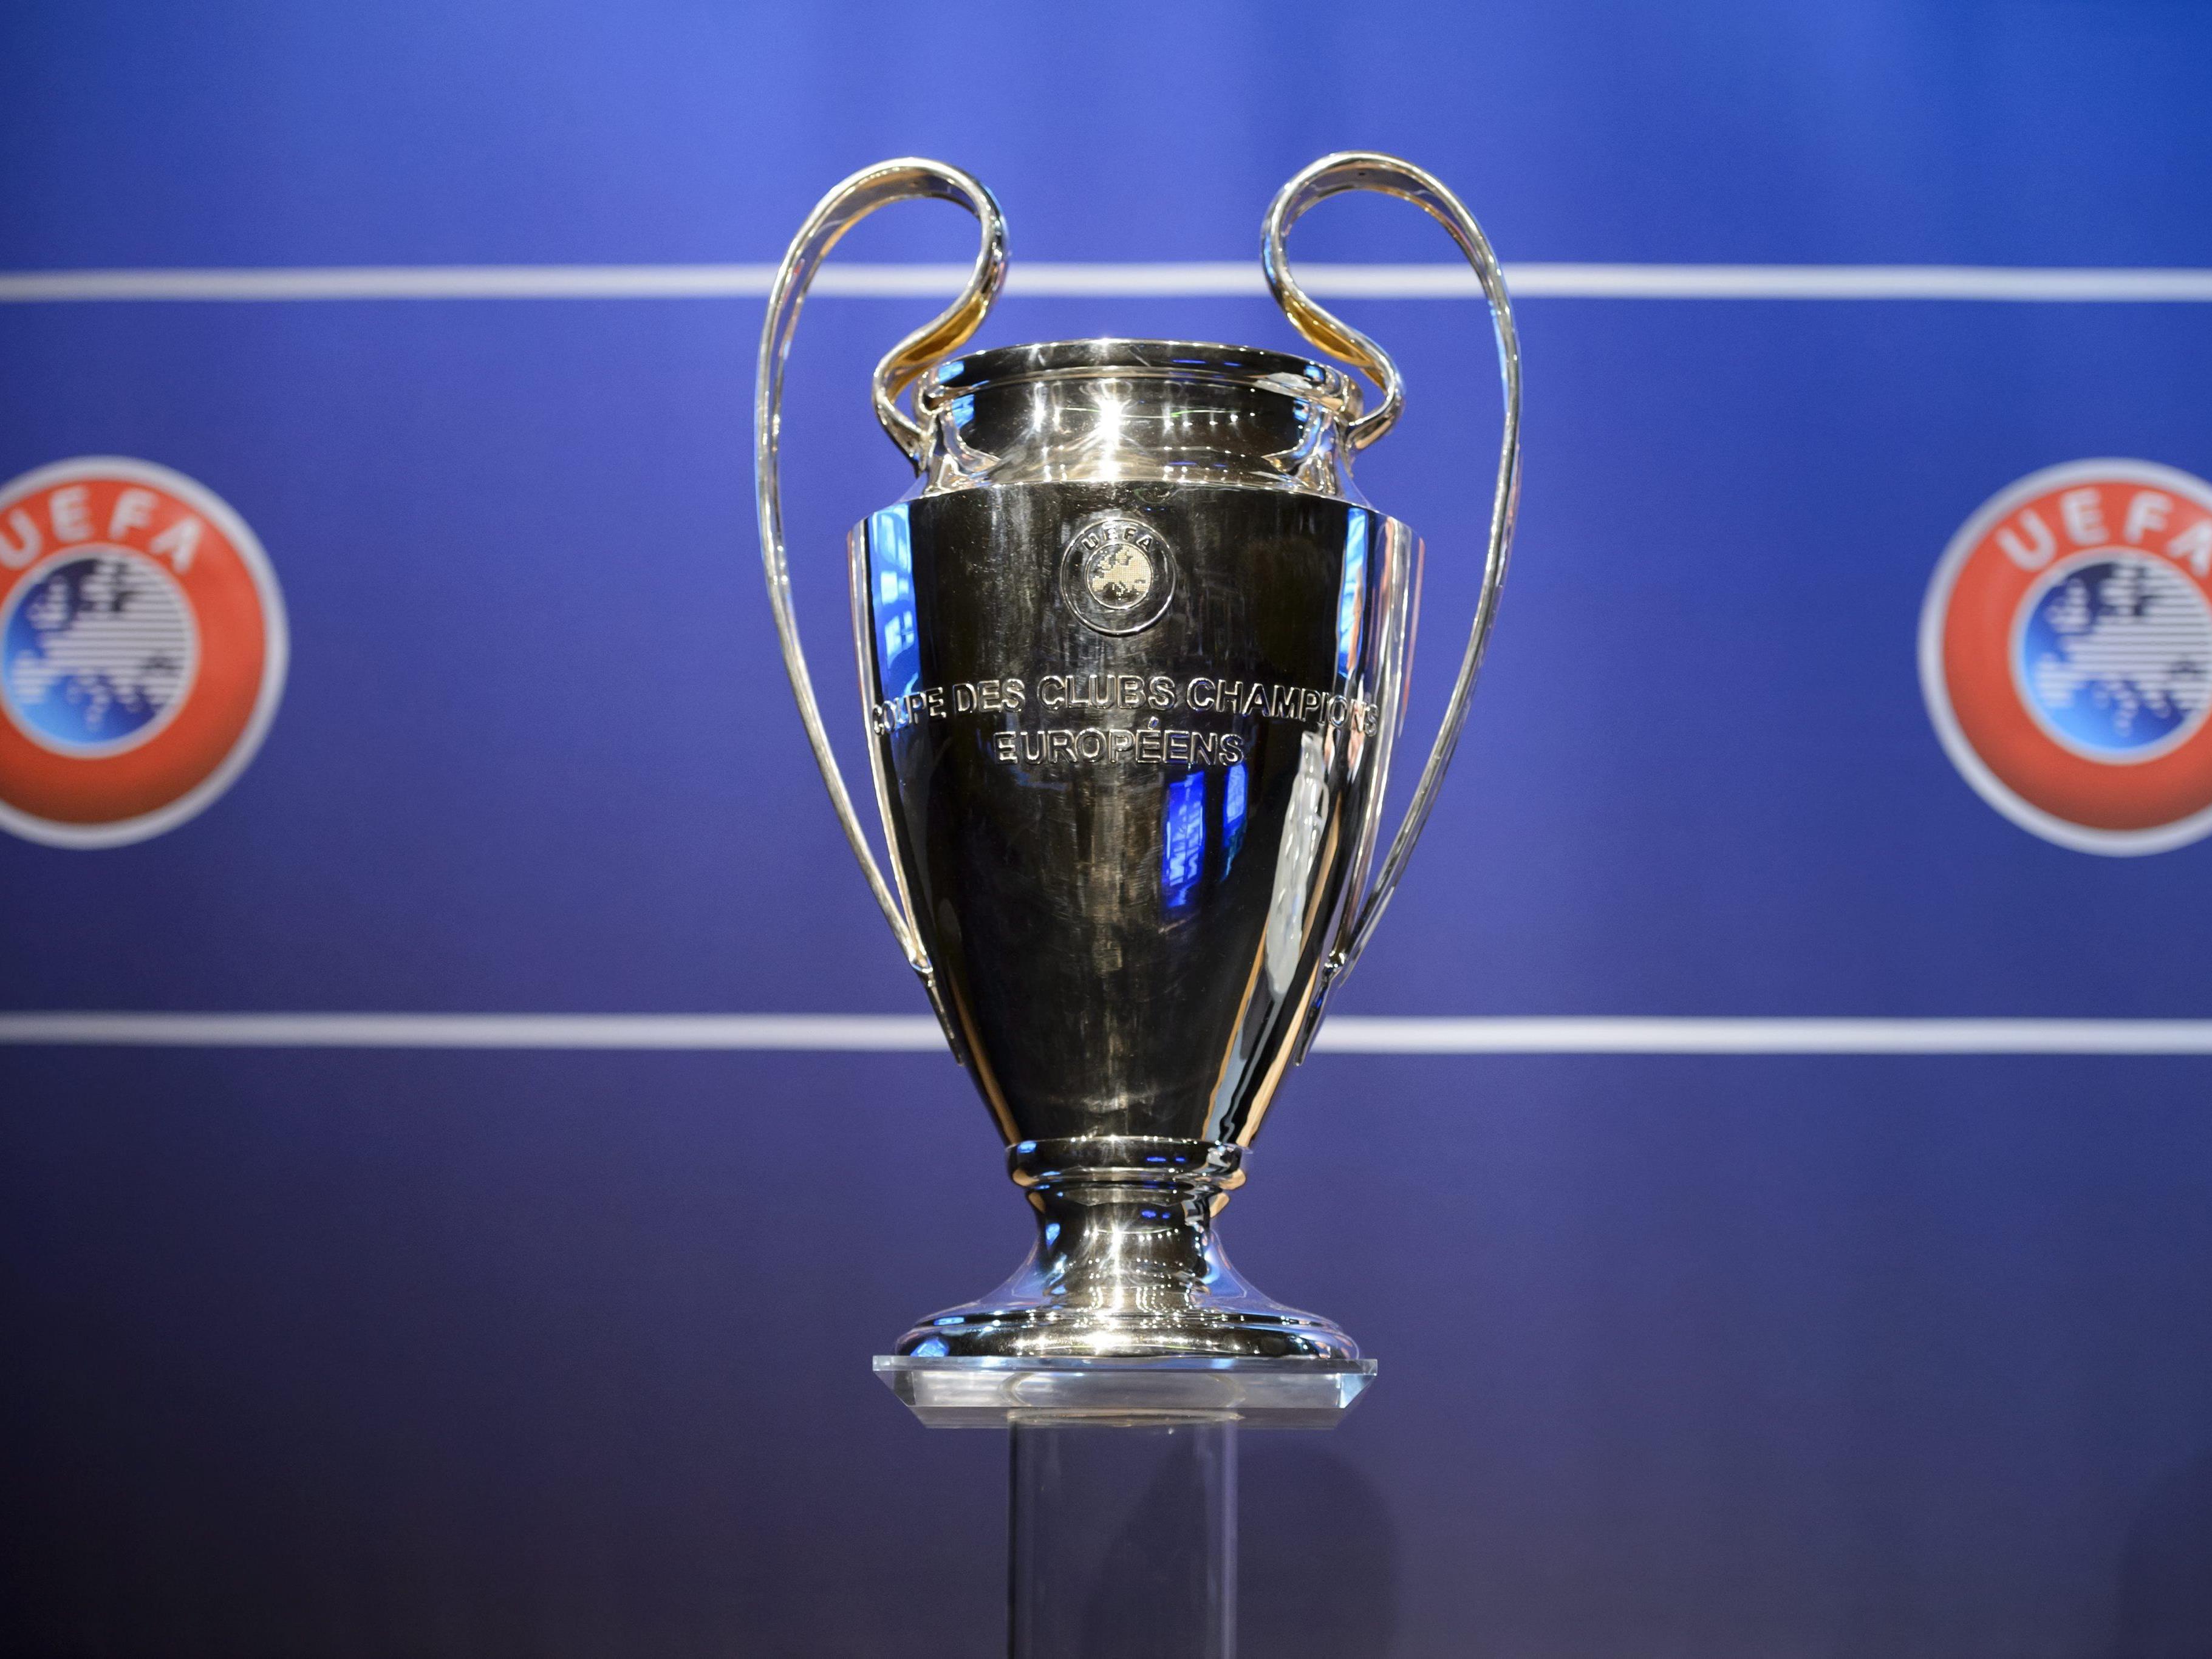 Vom 2. bis 4. Oktober kann der Champions League-Pokal in Wien bestaunt werden.